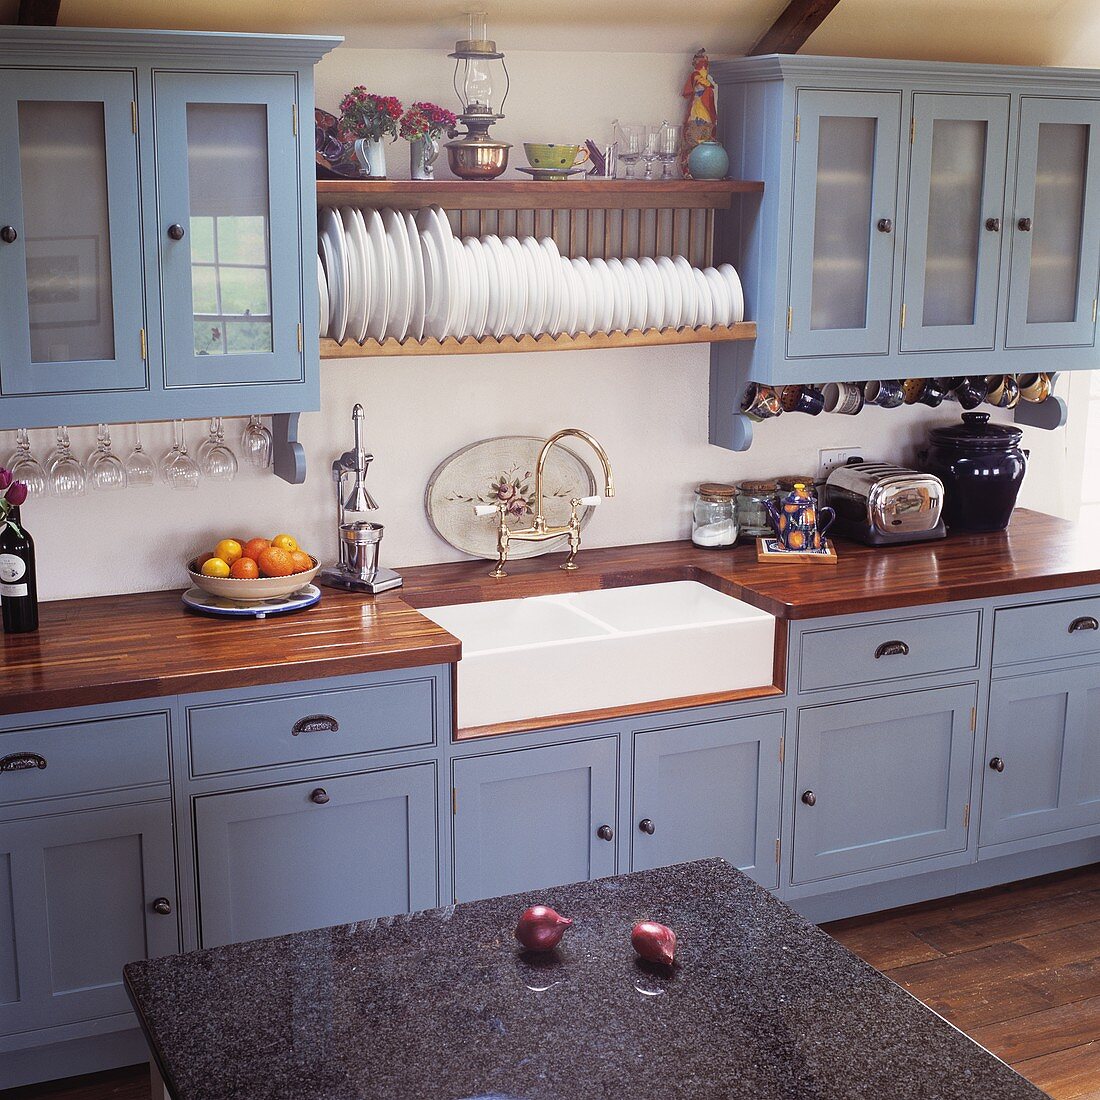 Landhausküche mit blaugrauen Fronten und Küchenboard mit Tellern über weisser Keramikspüle